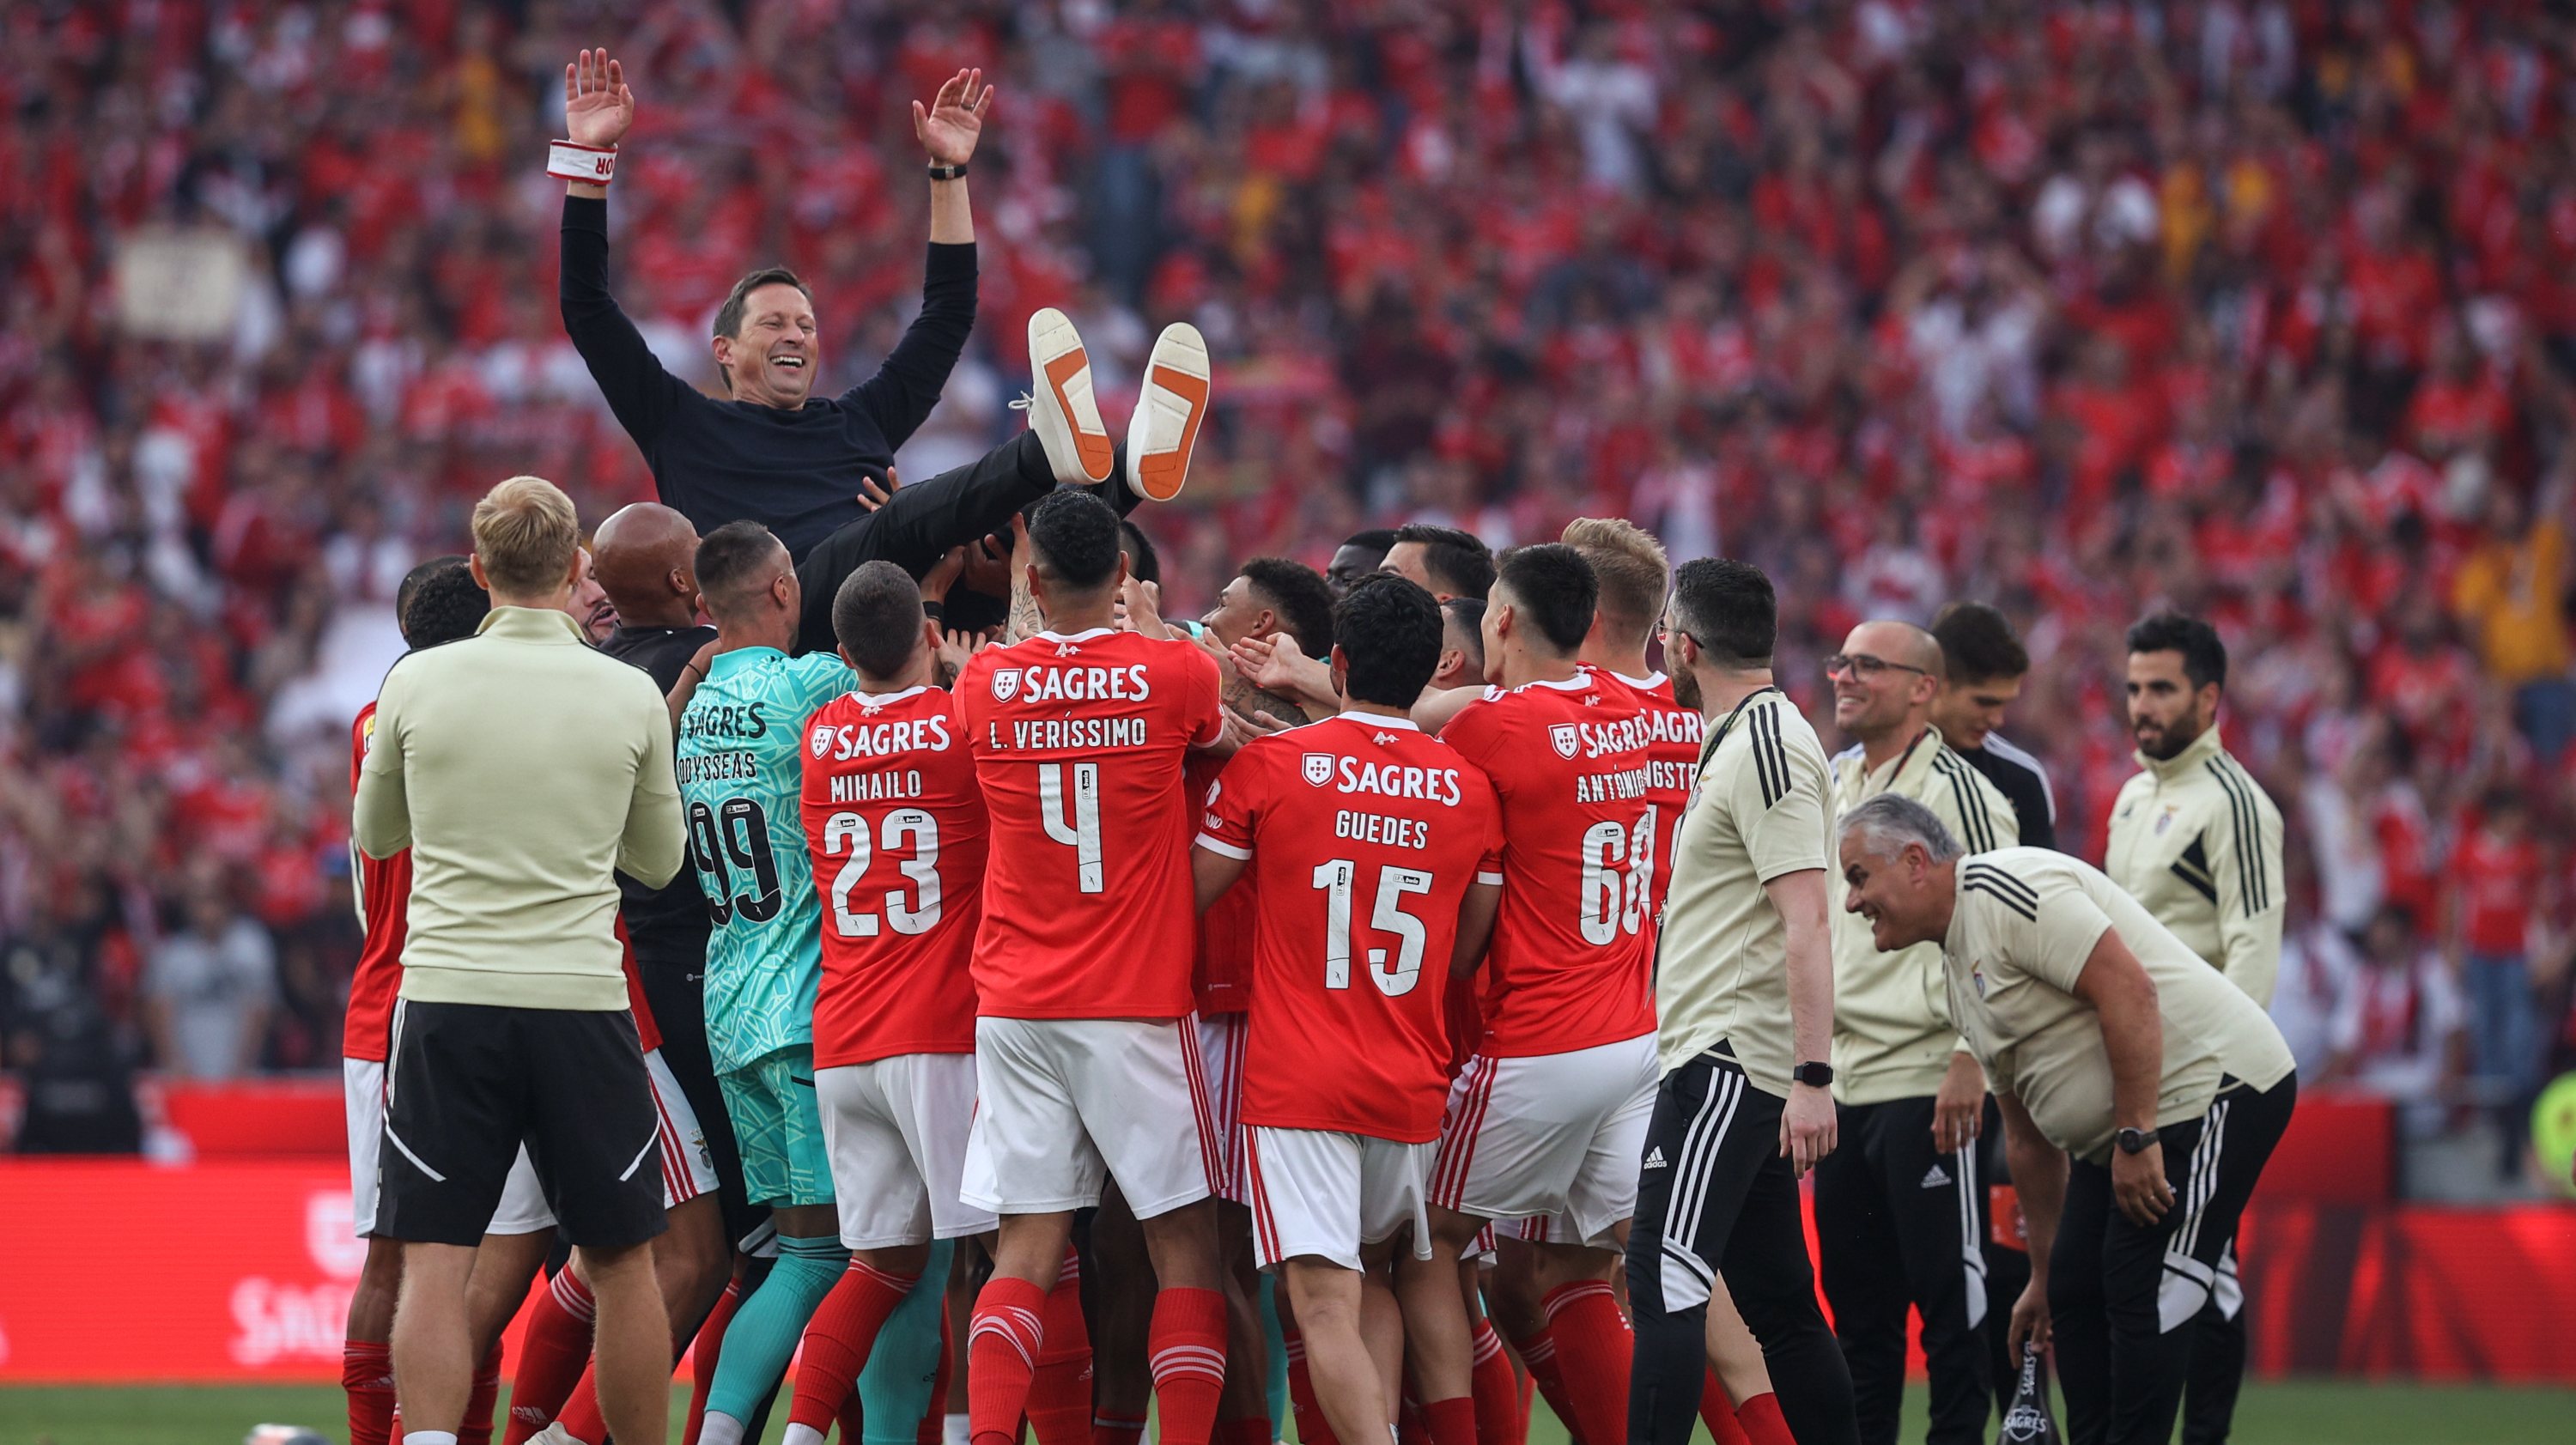 Jogadores do Benfica festejam a conquista do campeonato no estádio da Luz, a contar para a 34ª jornada da Primeira Liga 2022/23. Roger Schmidt Lisboa, 27 de Maio de 2023. FILIPE AMORIM/OBSERVADOR